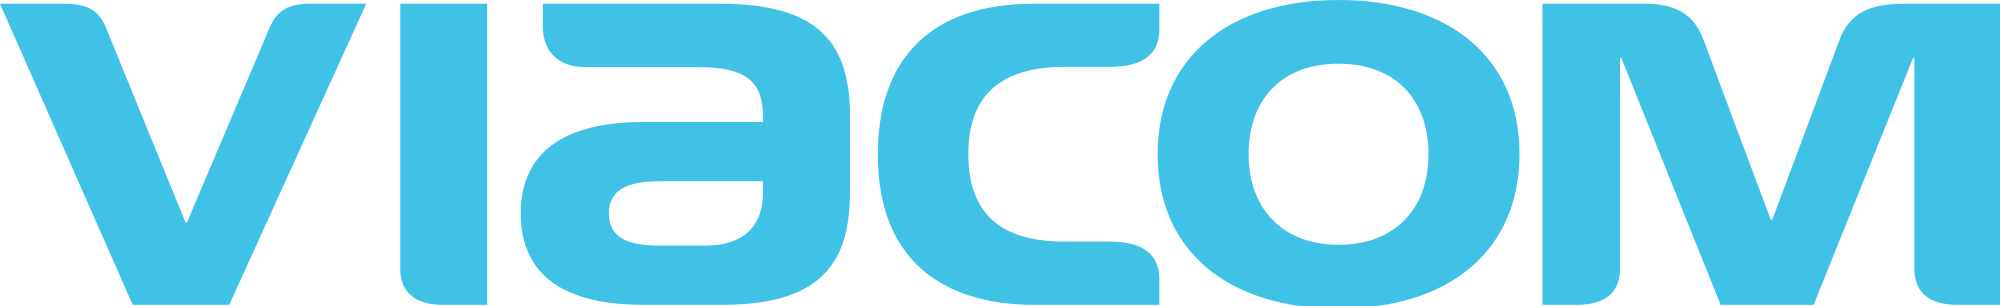 Viacom-Logo.png